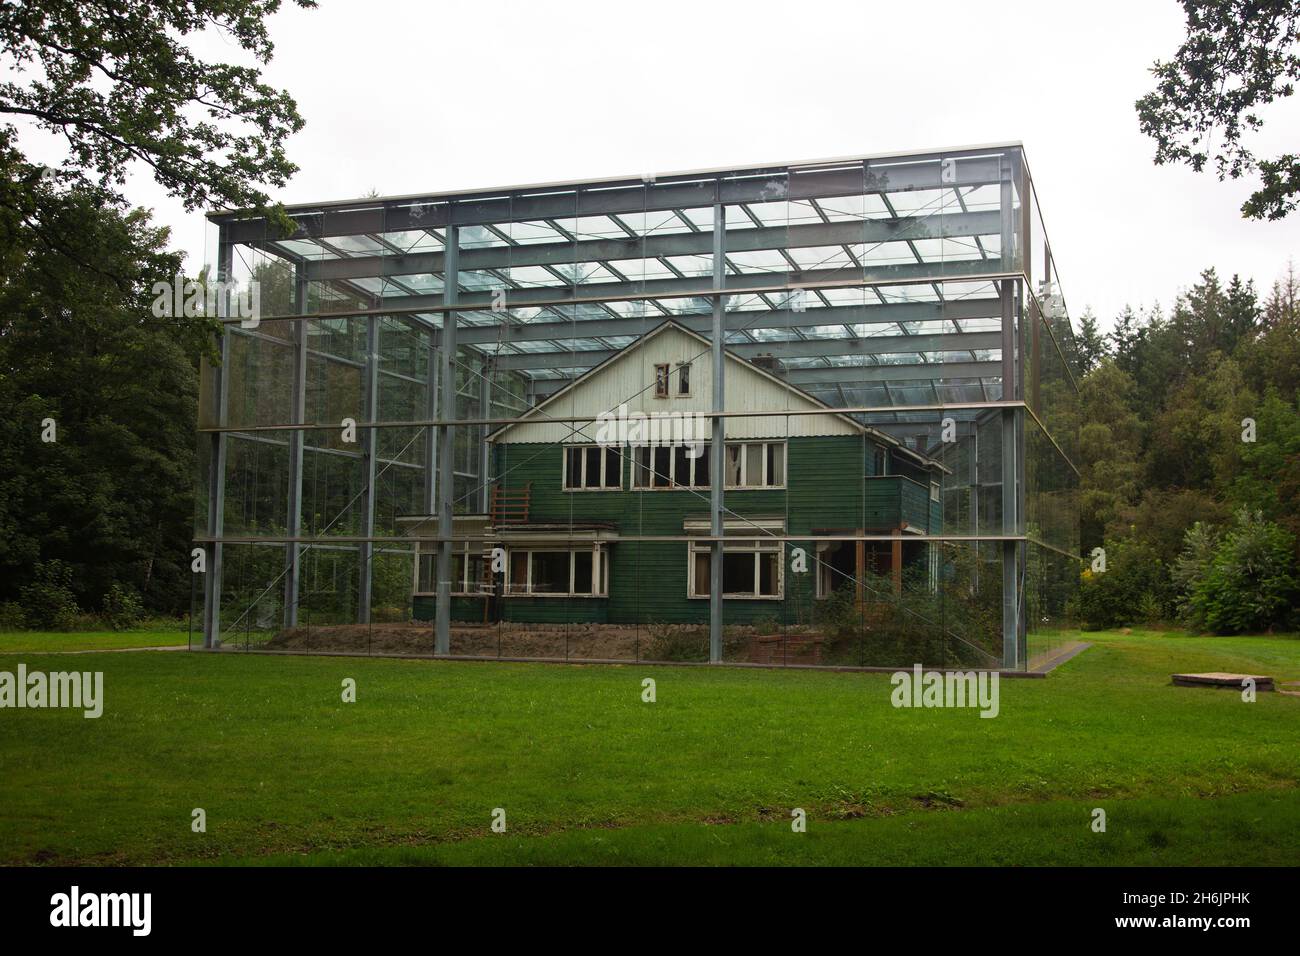 Maison du commandant du camp de transit de Westerbork dans un abri transparent, Drenthe, pays-Bas Banque D'Images